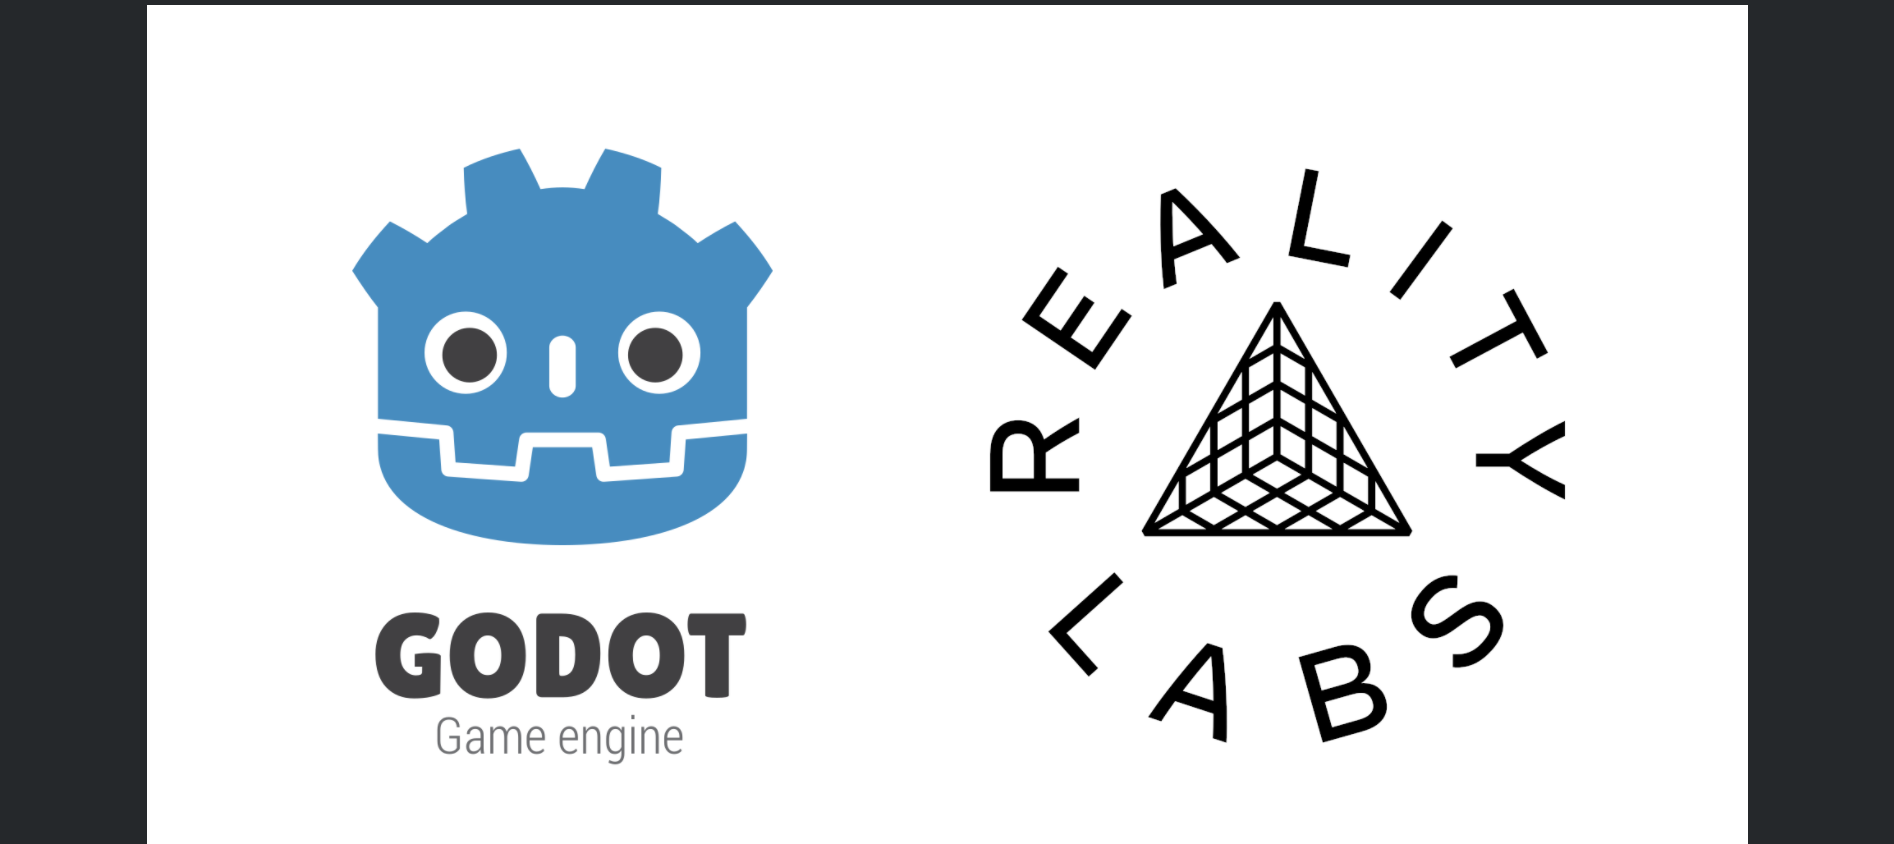 Godot Engine recebeu investimentos do Facebook/Meta para desenvolvimento do XR